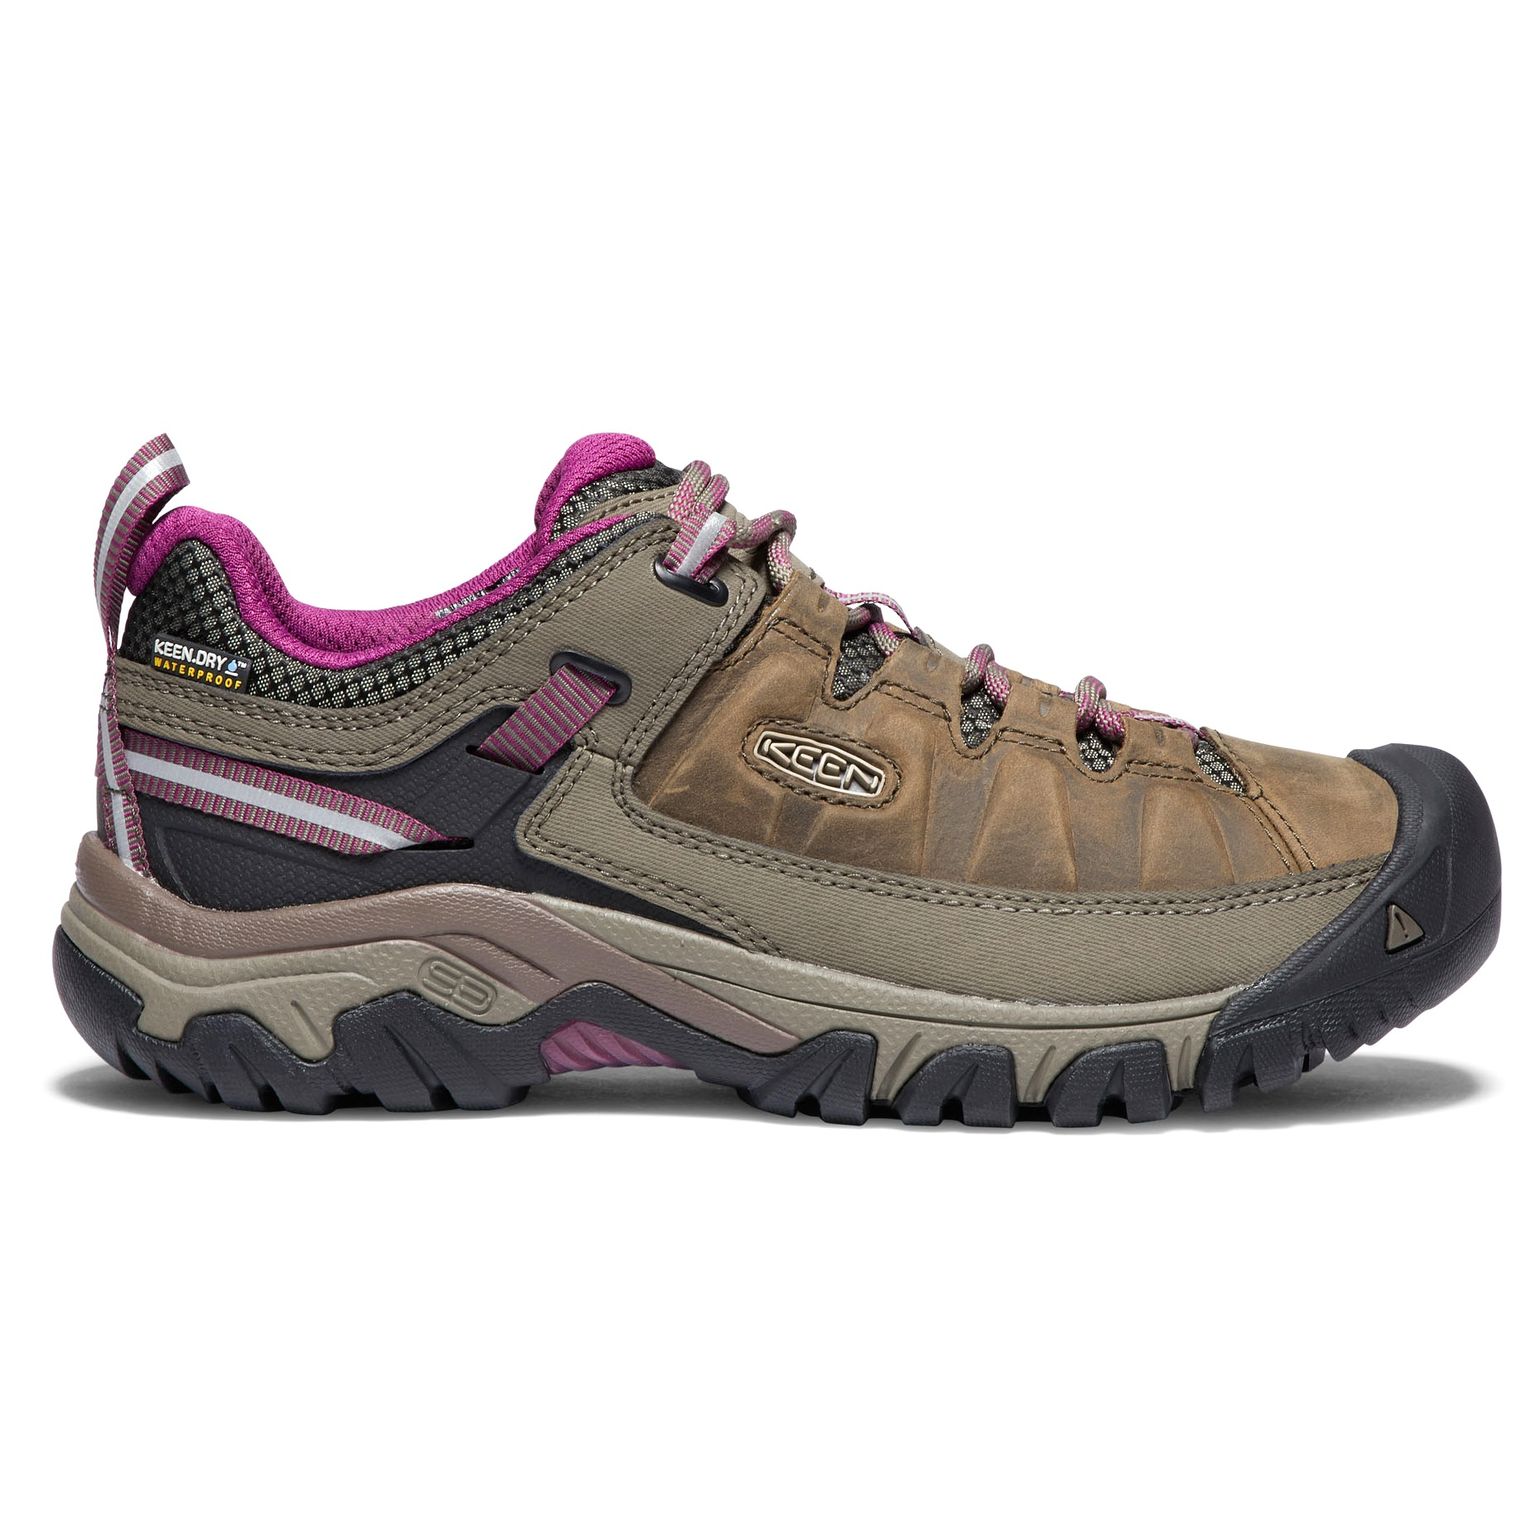 Women's Targhee III Waterproof Hiking Shoes Weiss/Boysenberry